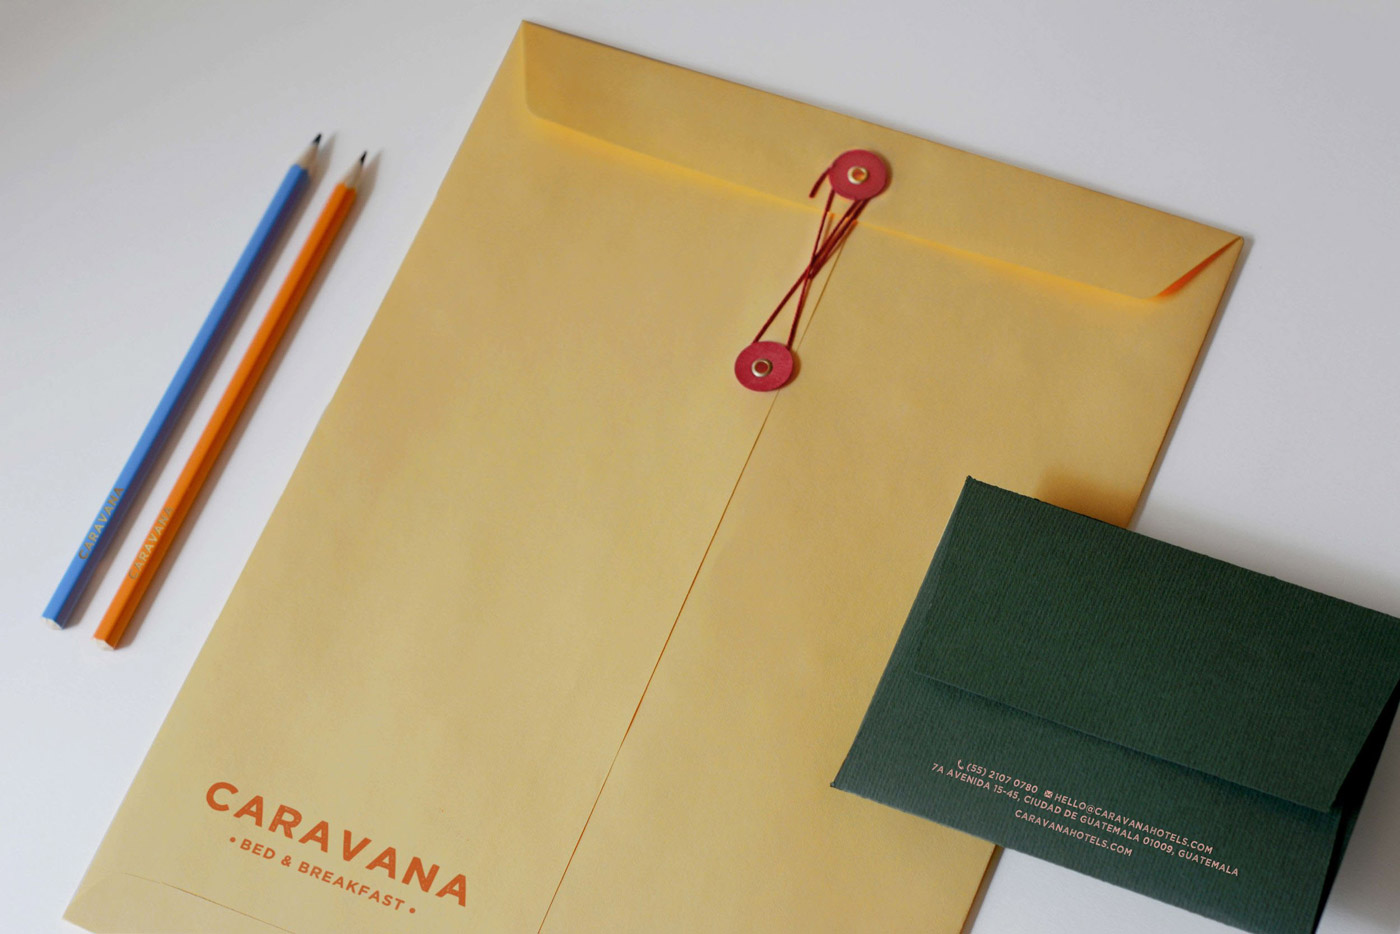 CARAVANA Bed & Breakfast branding by Panel Studio